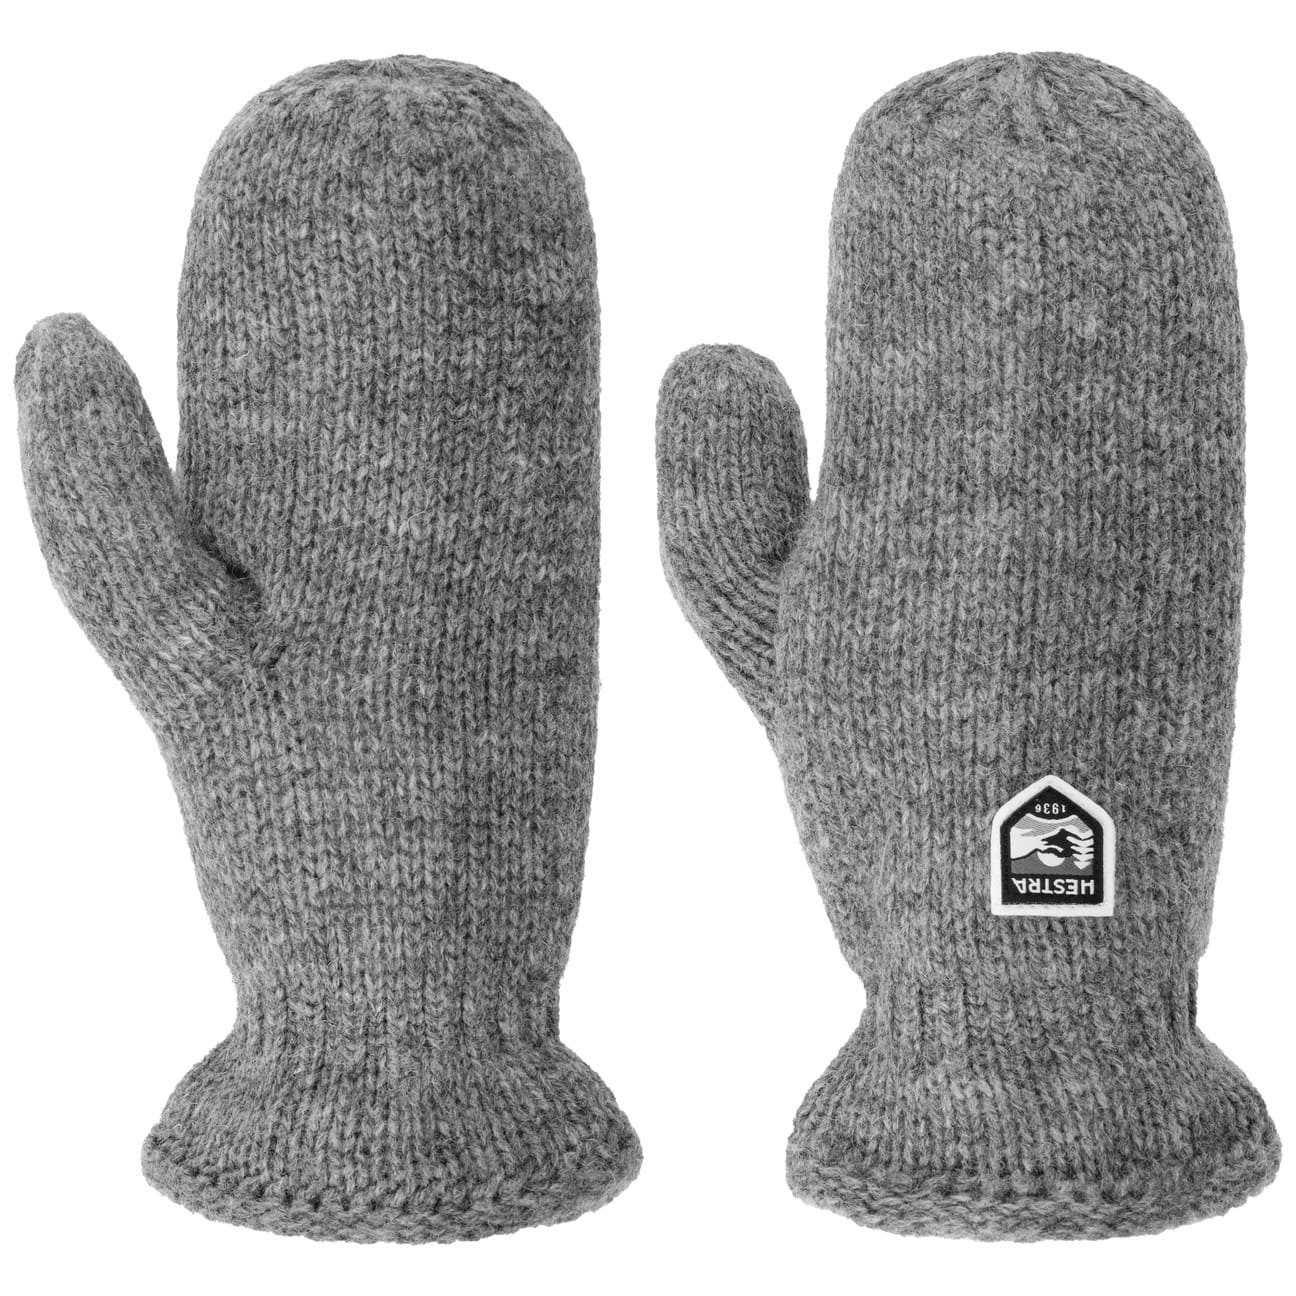 Hestra Strickhandschuhe Handschuhe mit Futter grau